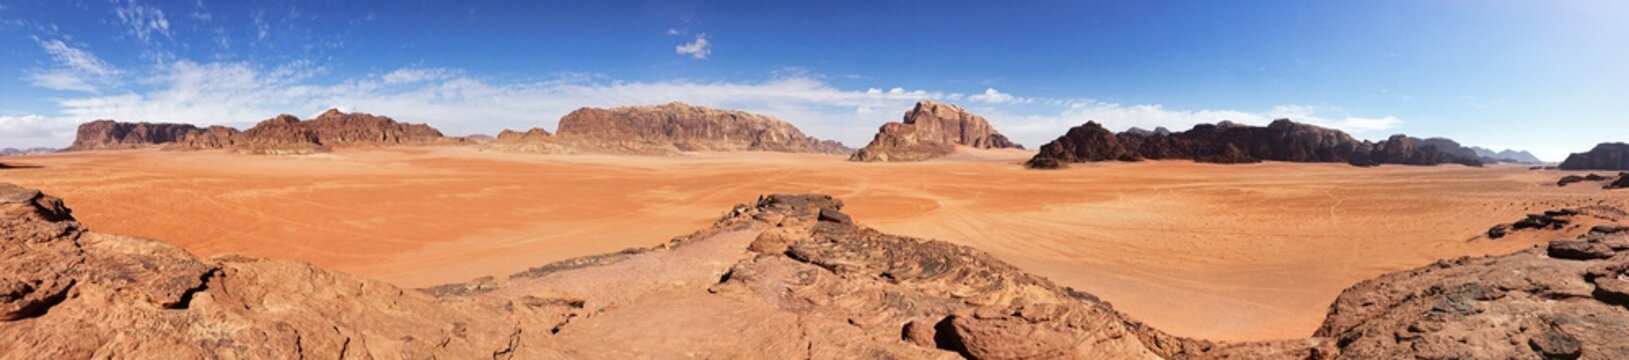 Panoramic photo view in the desert of Wdai Rum, Jordan. 